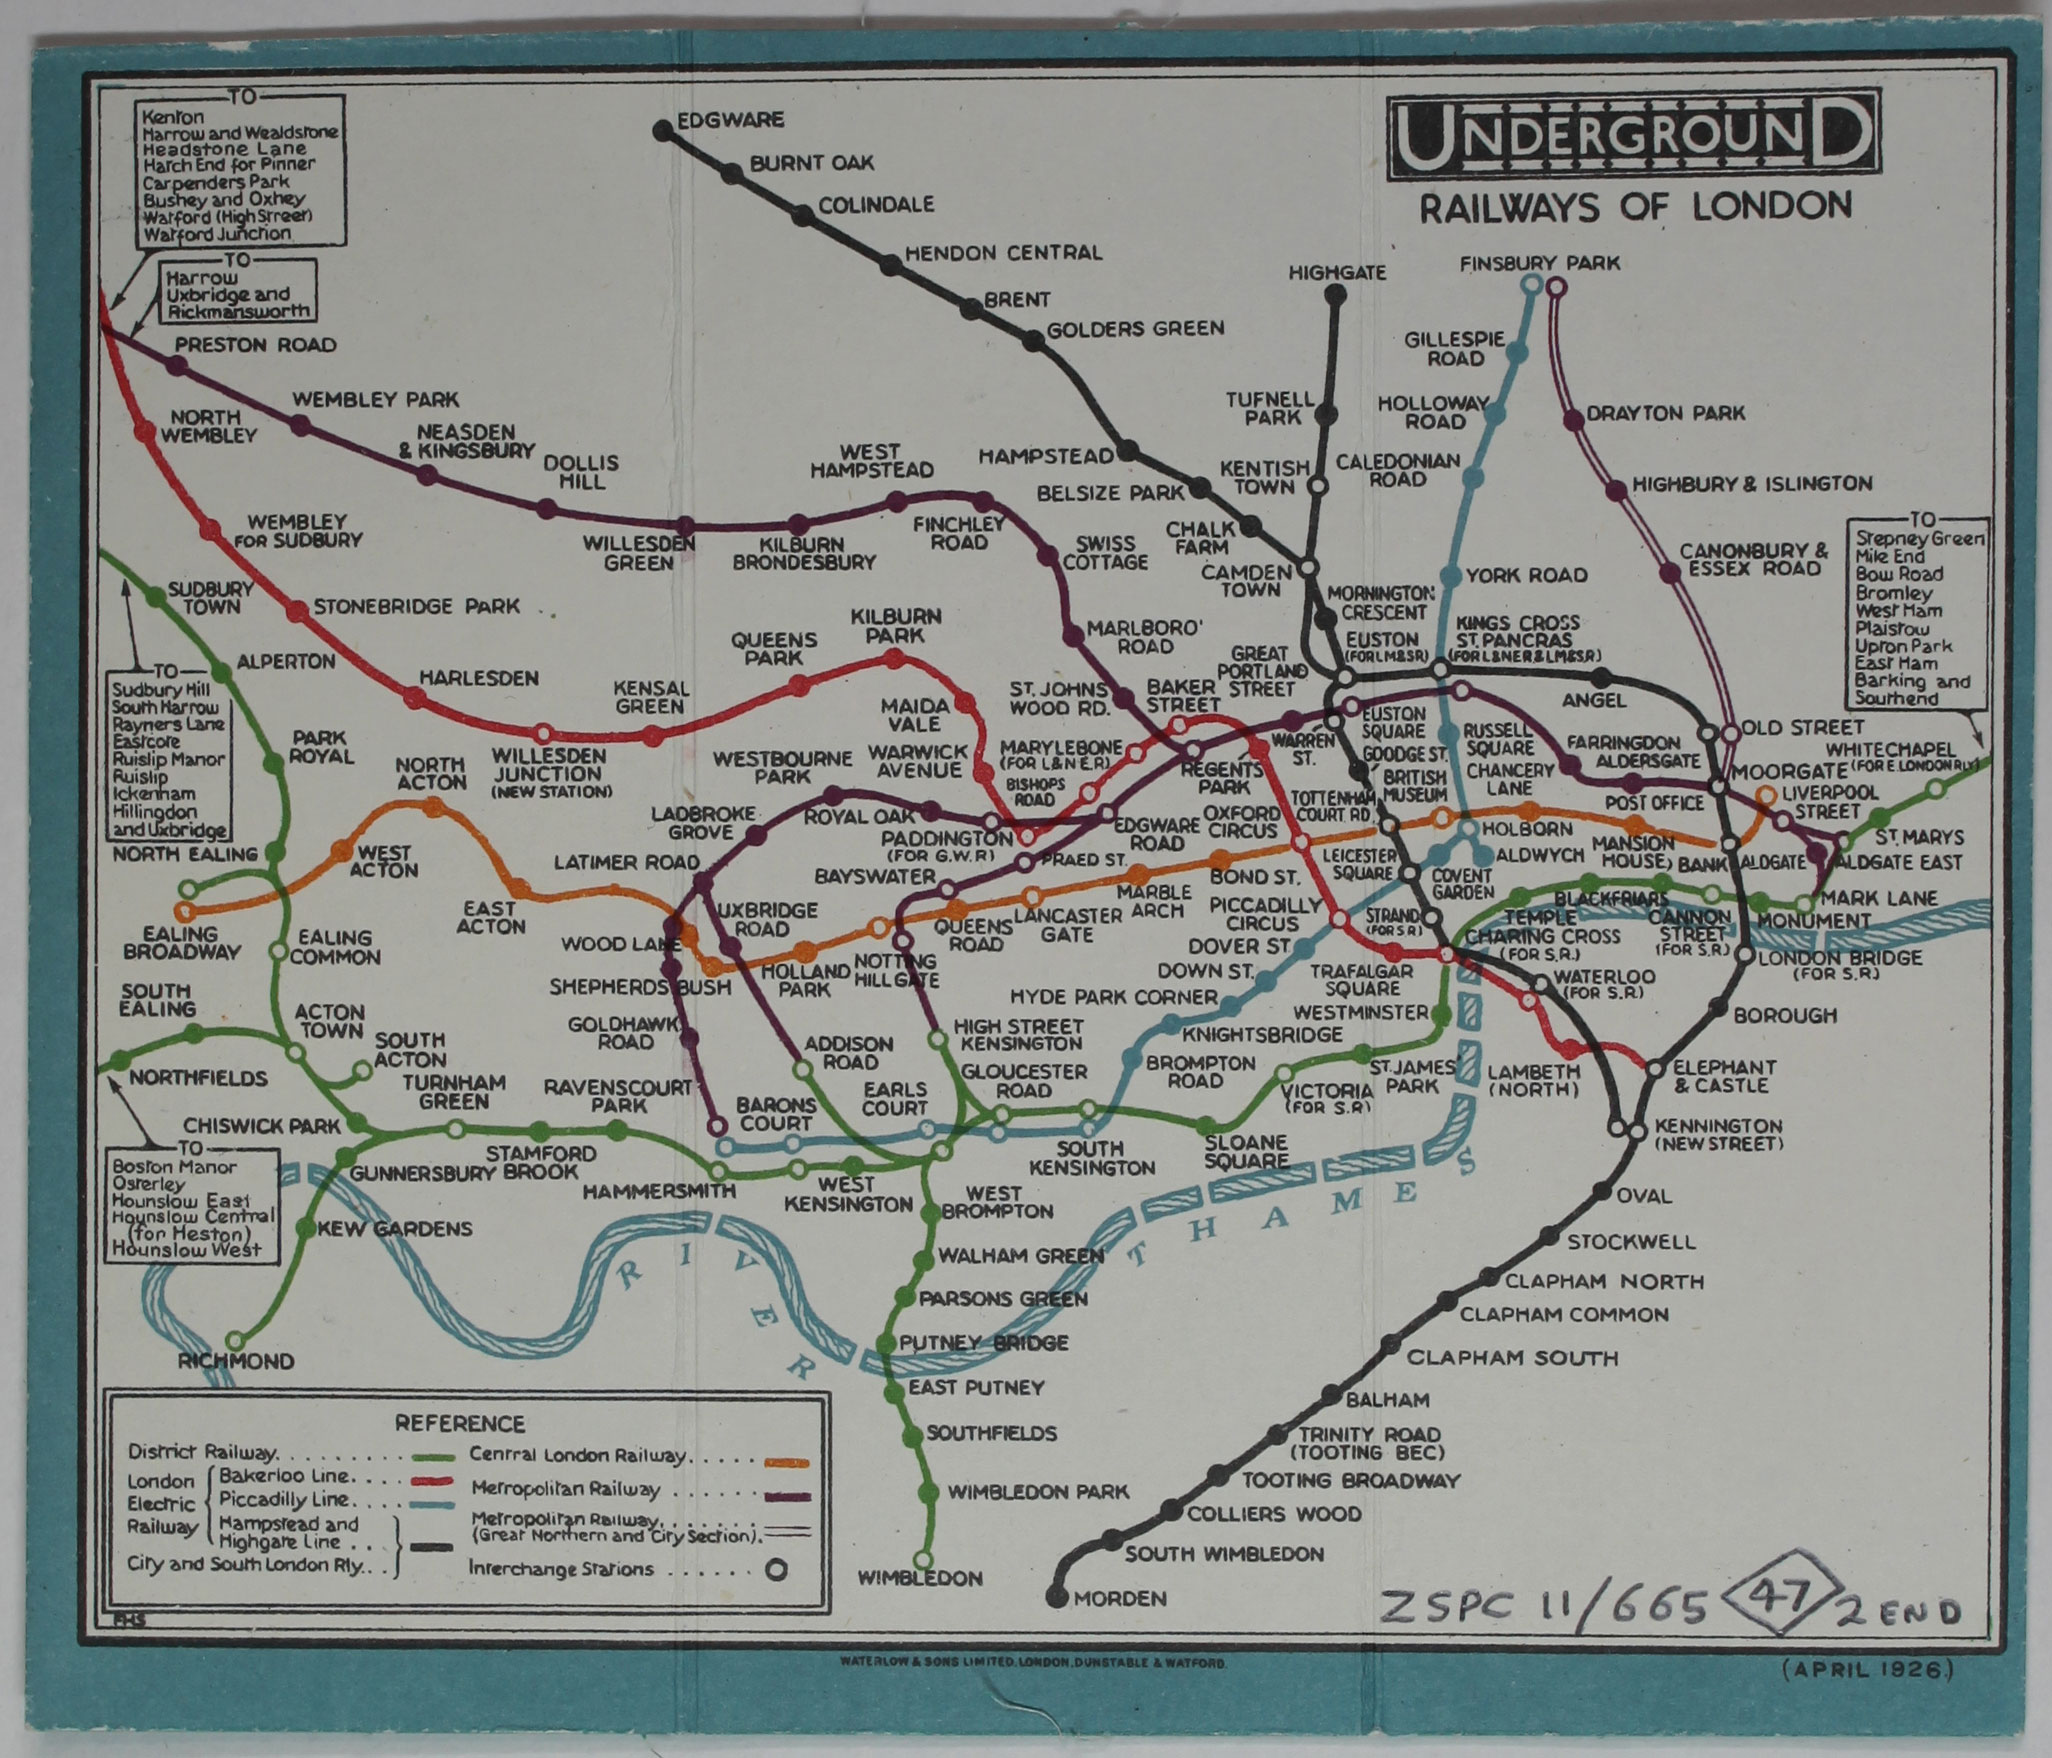 ZSPC11/665 Underground Map